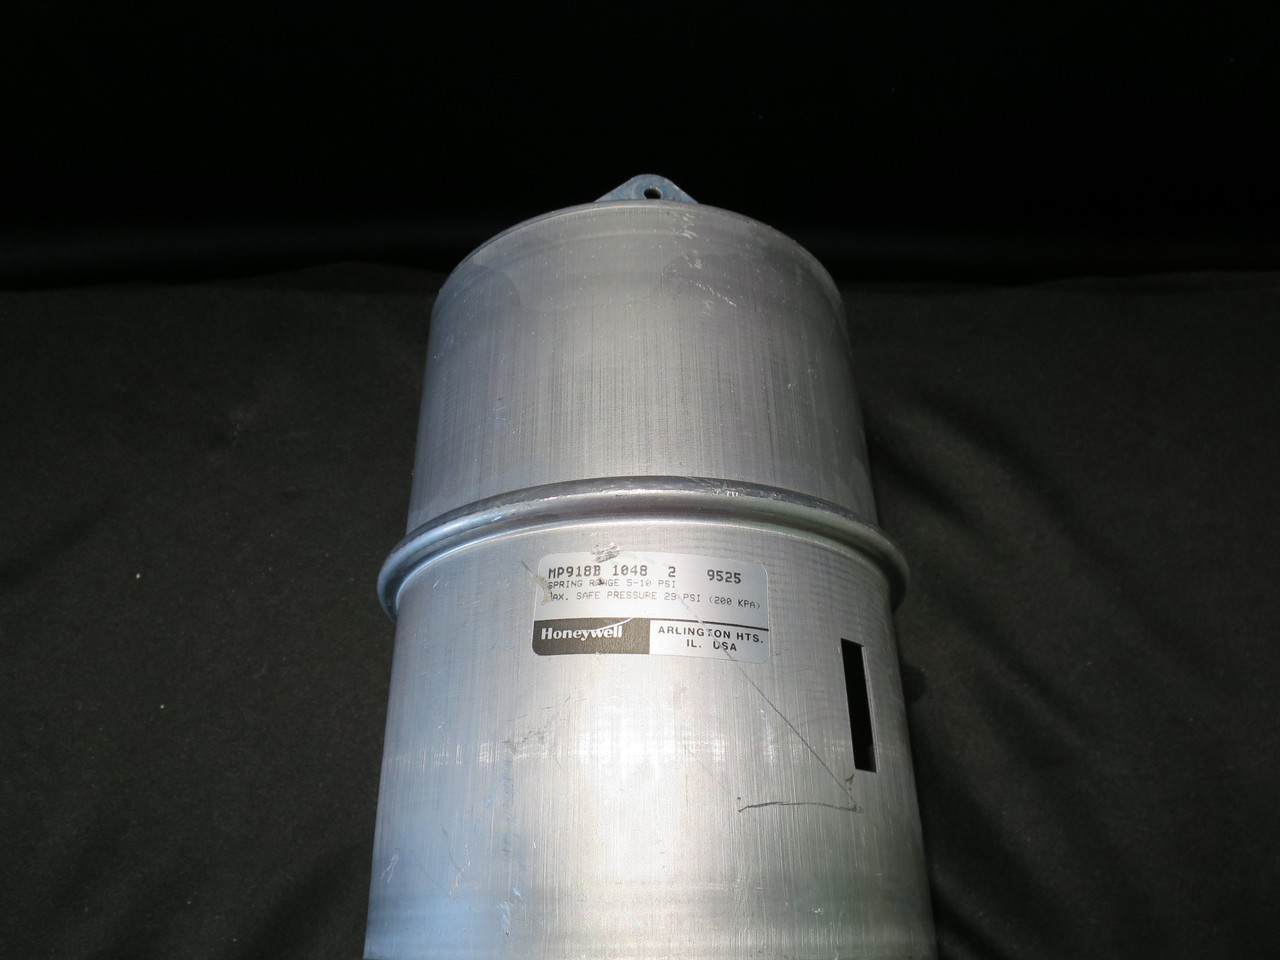 Linear Pneumatic Damper Actuator Honeywell MP918B10482